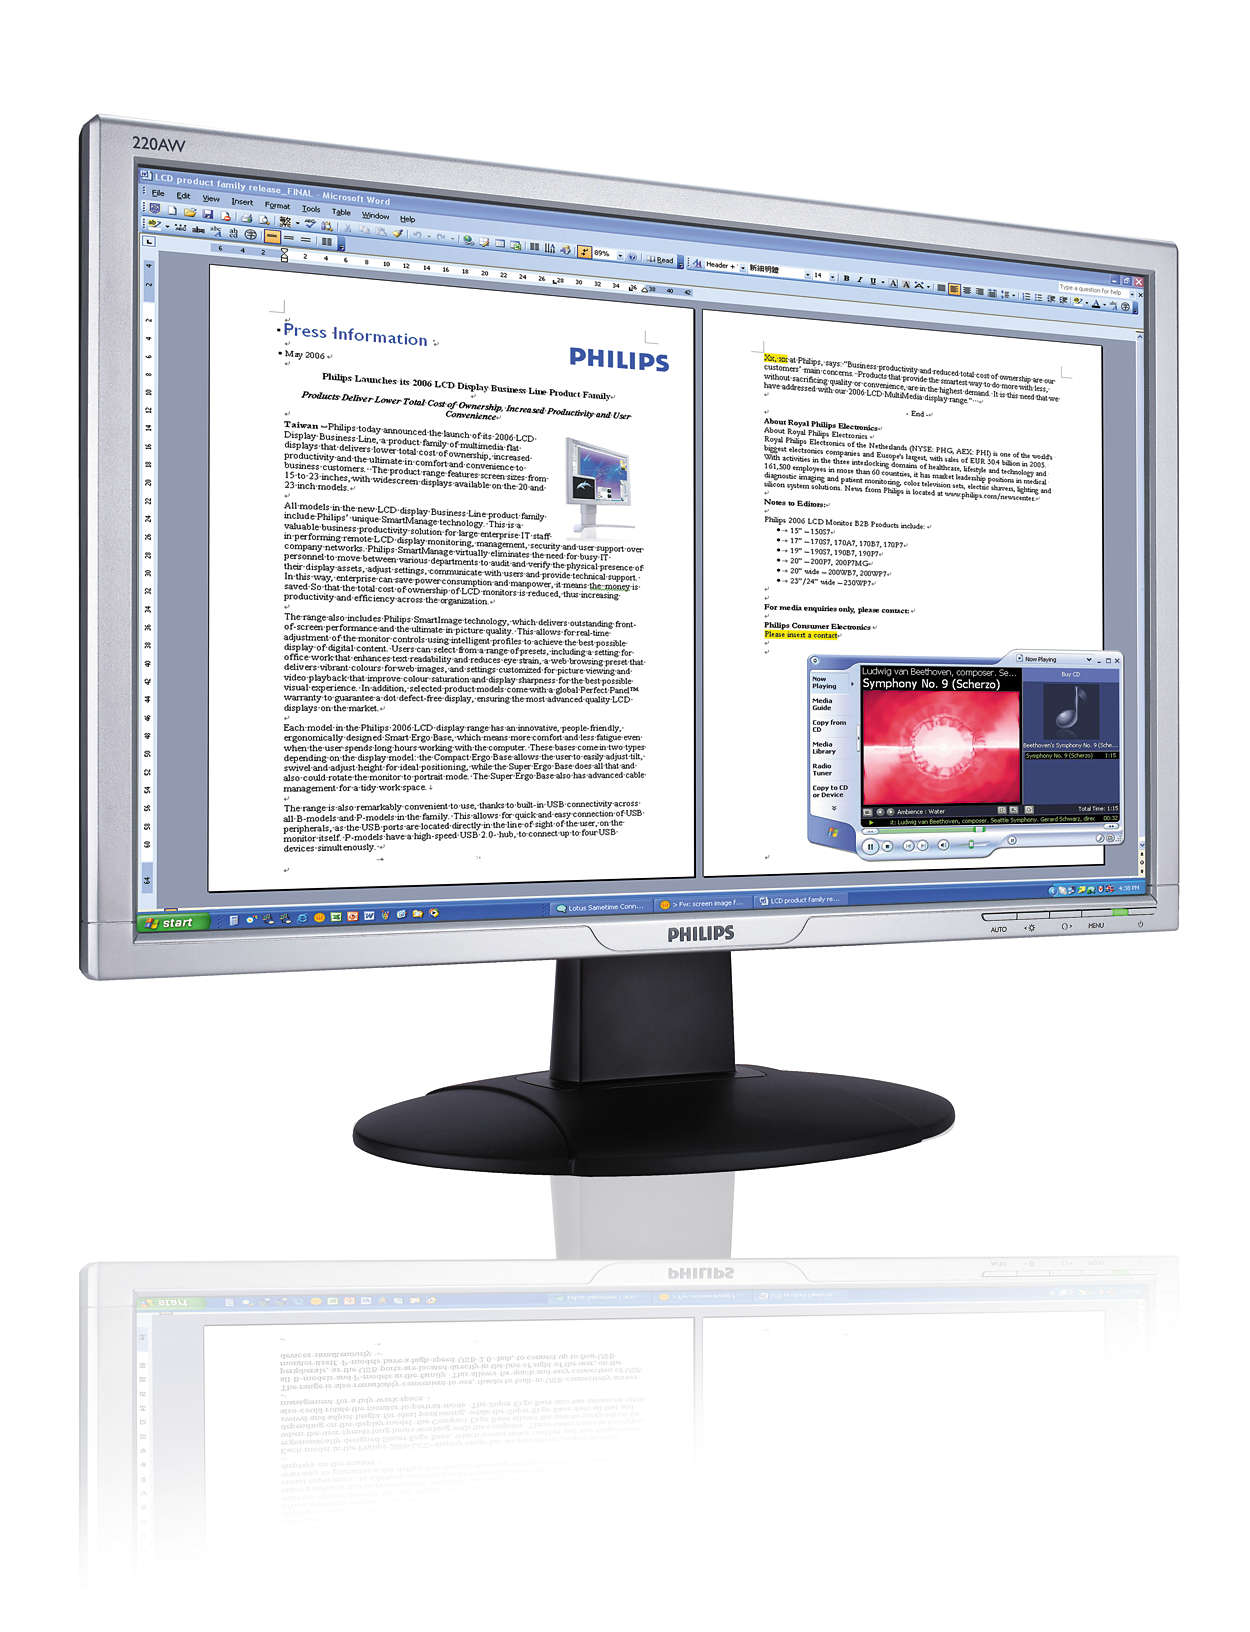 Audio intégré pratique, écran 16:9 compatible Windows Vista